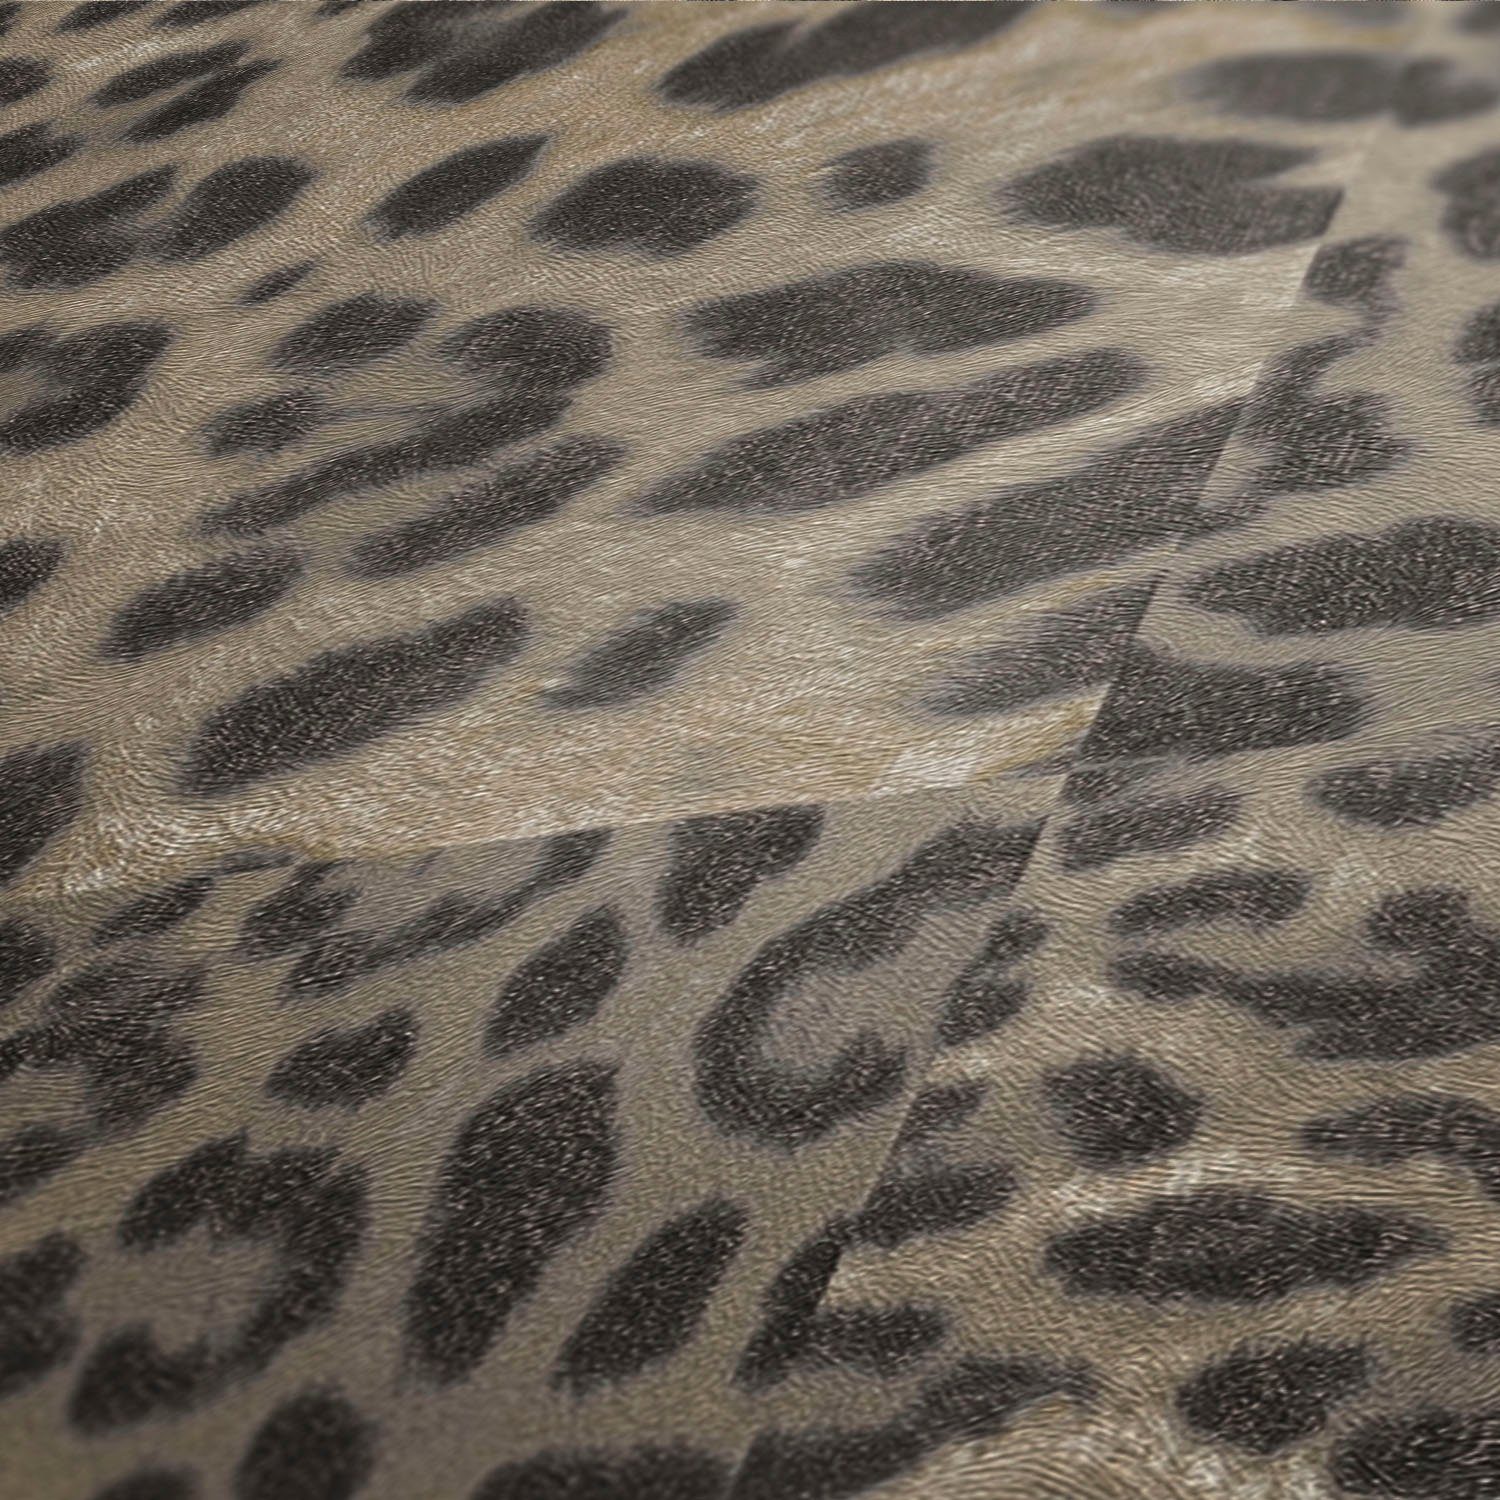 Fellimitat, animal Tapete braun/beige walls strukturiert, Leopardenmuster Desert gemustert, print, Vliestapete Lodge, living